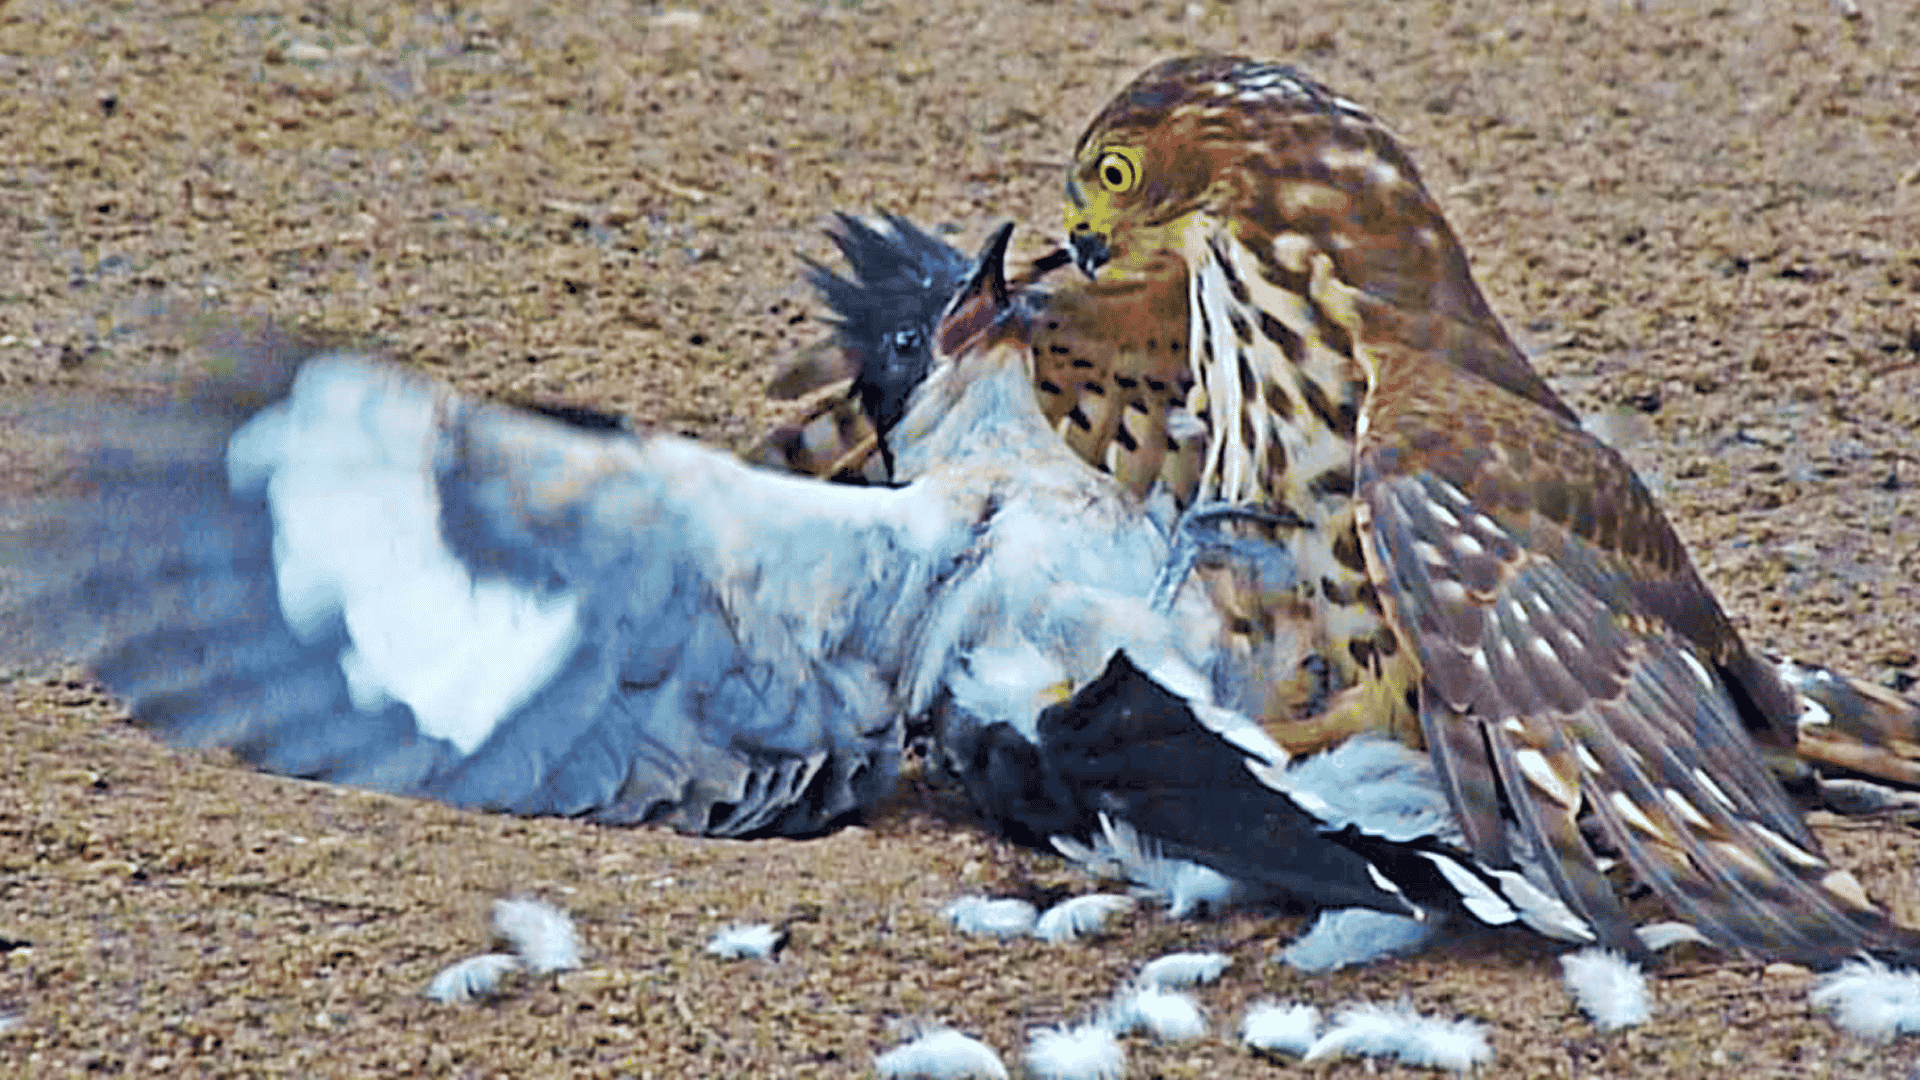 Hawk tries to kill cuckoo bird